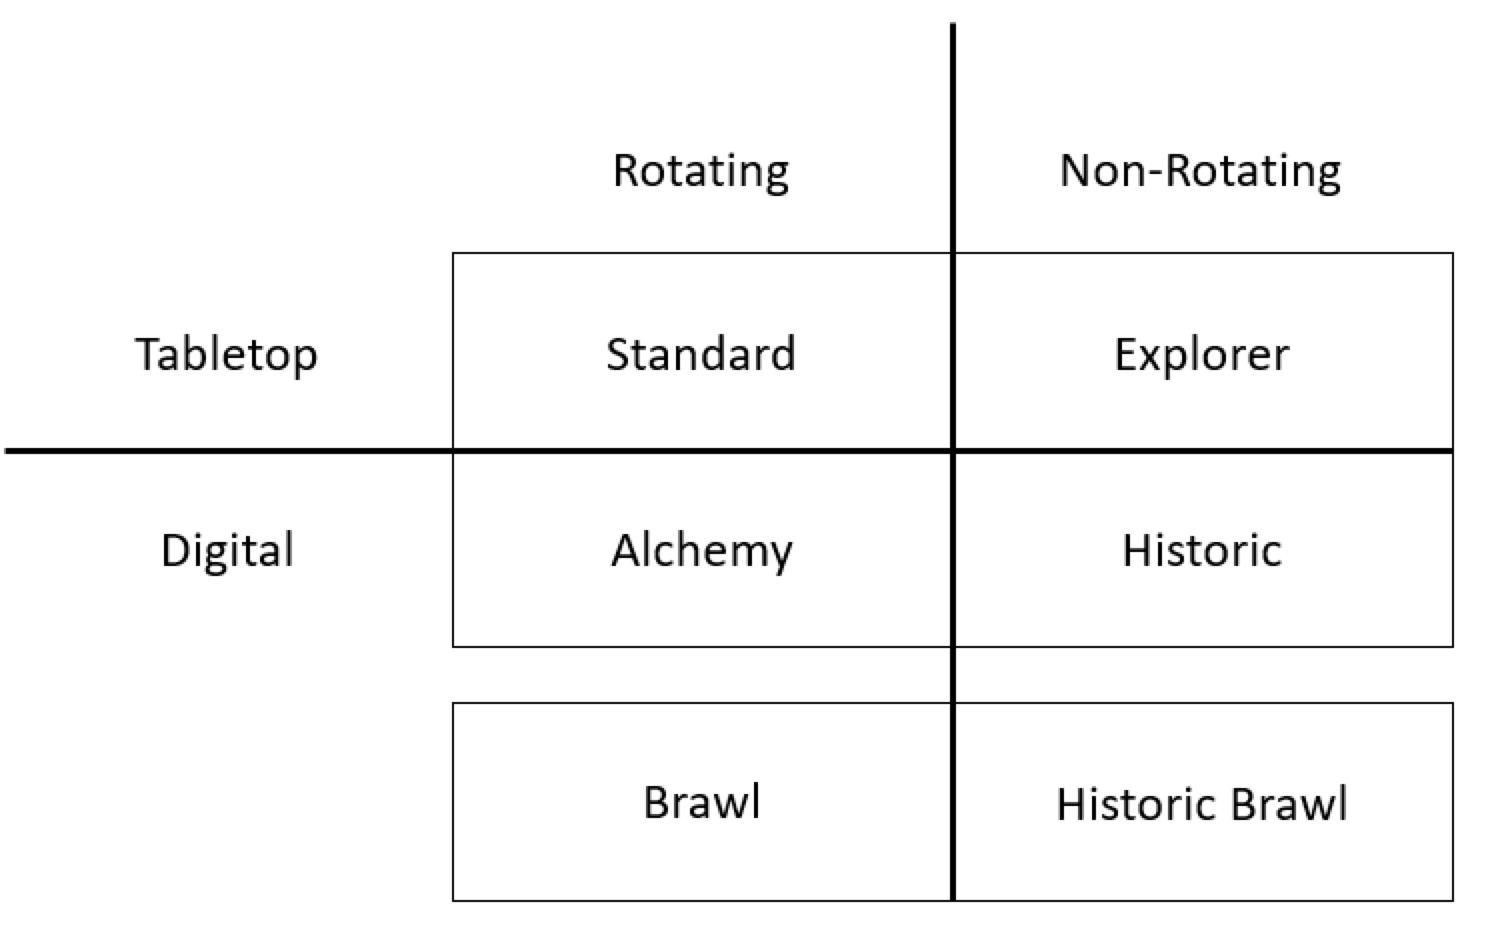 Gráfico exibindo os formatos de mesa e digitais agrupados em com rotação (Padrão, Alquimia e Brawl) e sem rotação (Explorador, Histórico e Brawl Histórico)